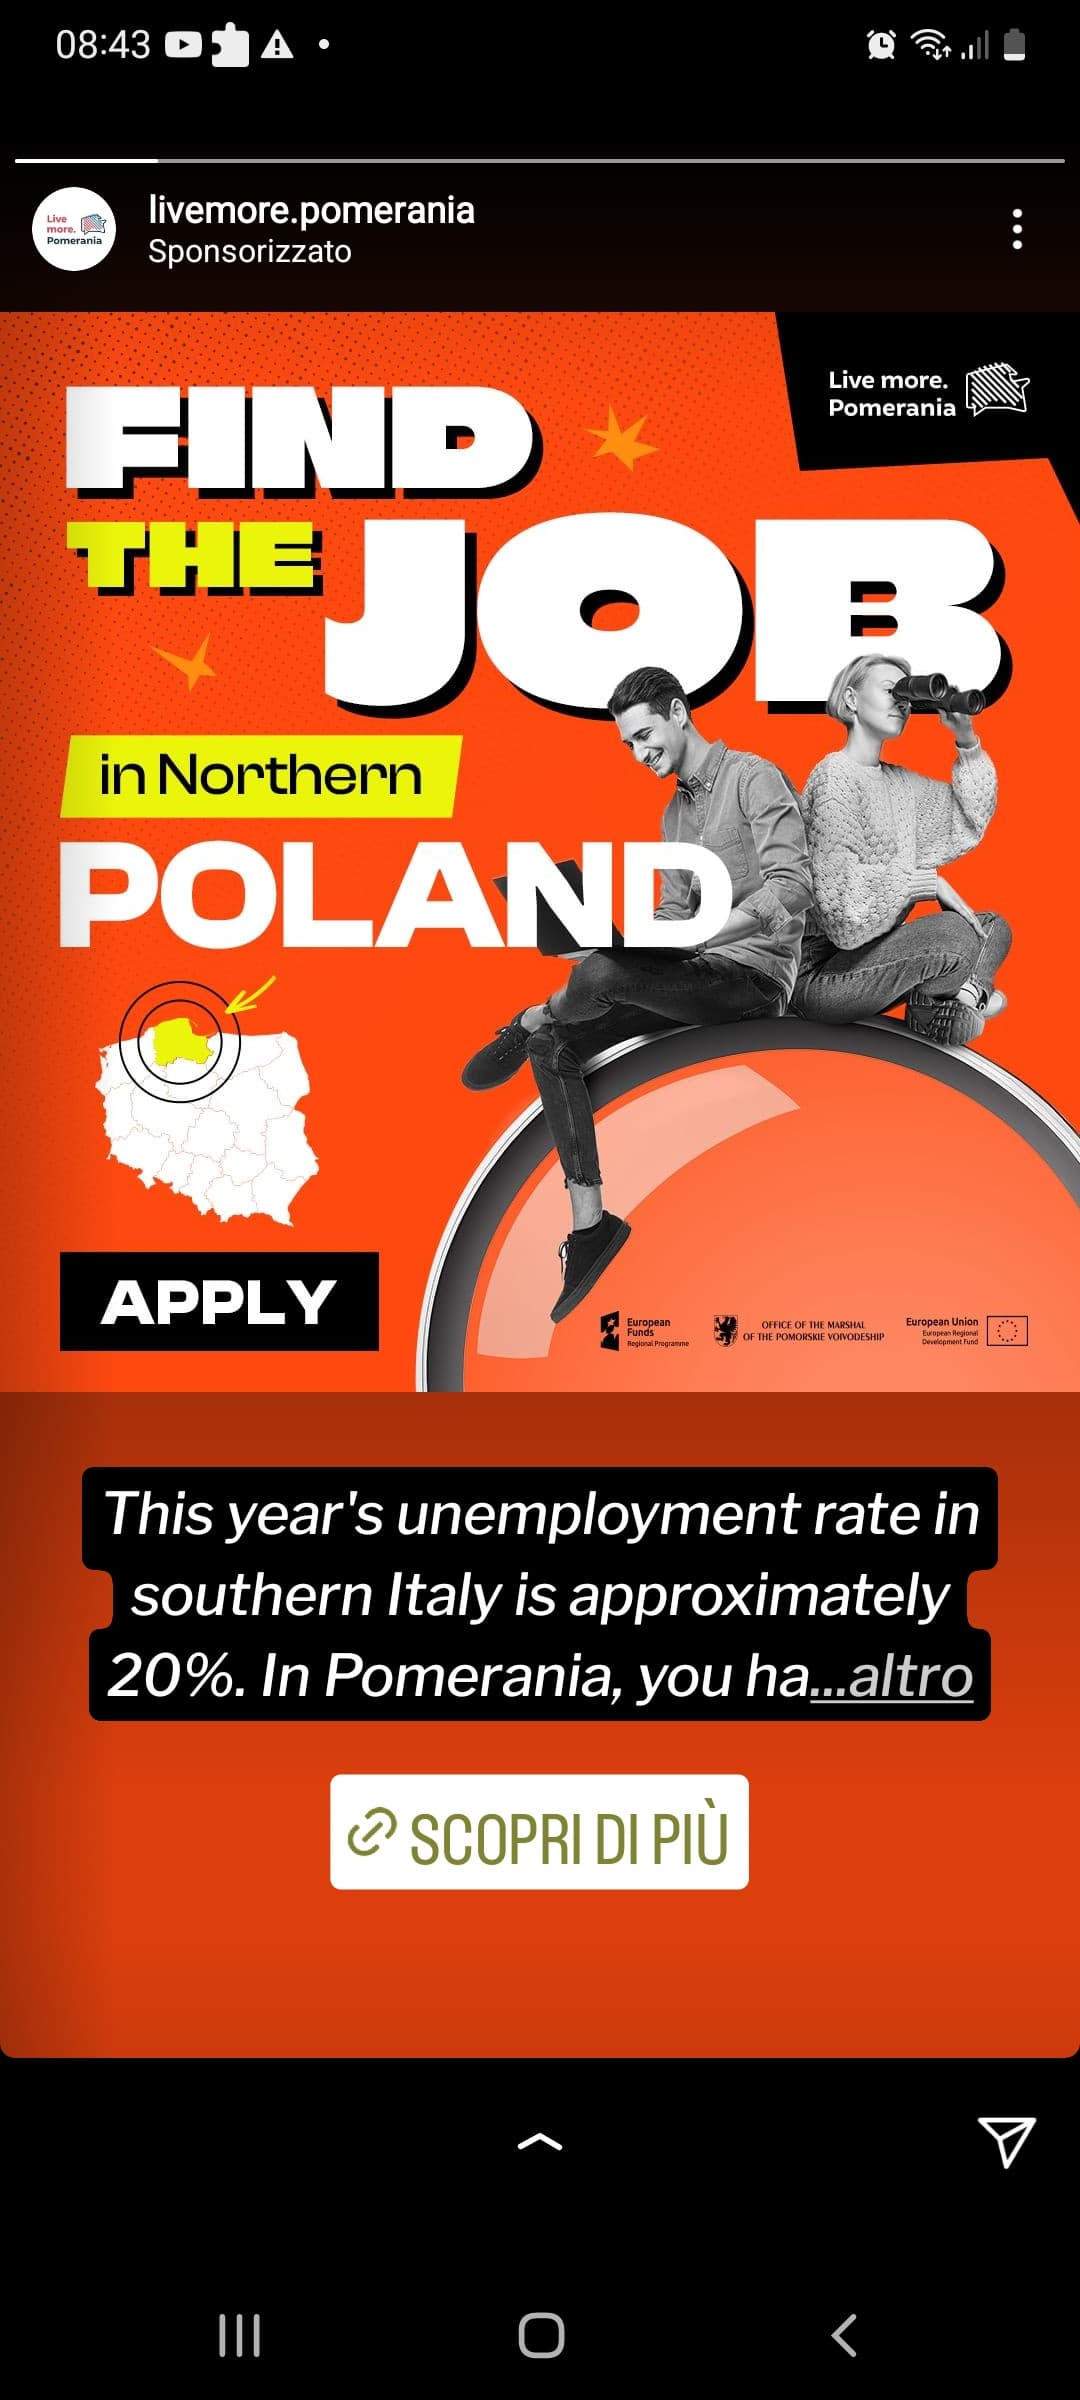 Pubblicità che mi consiglia di andare a lavorare in Polonia